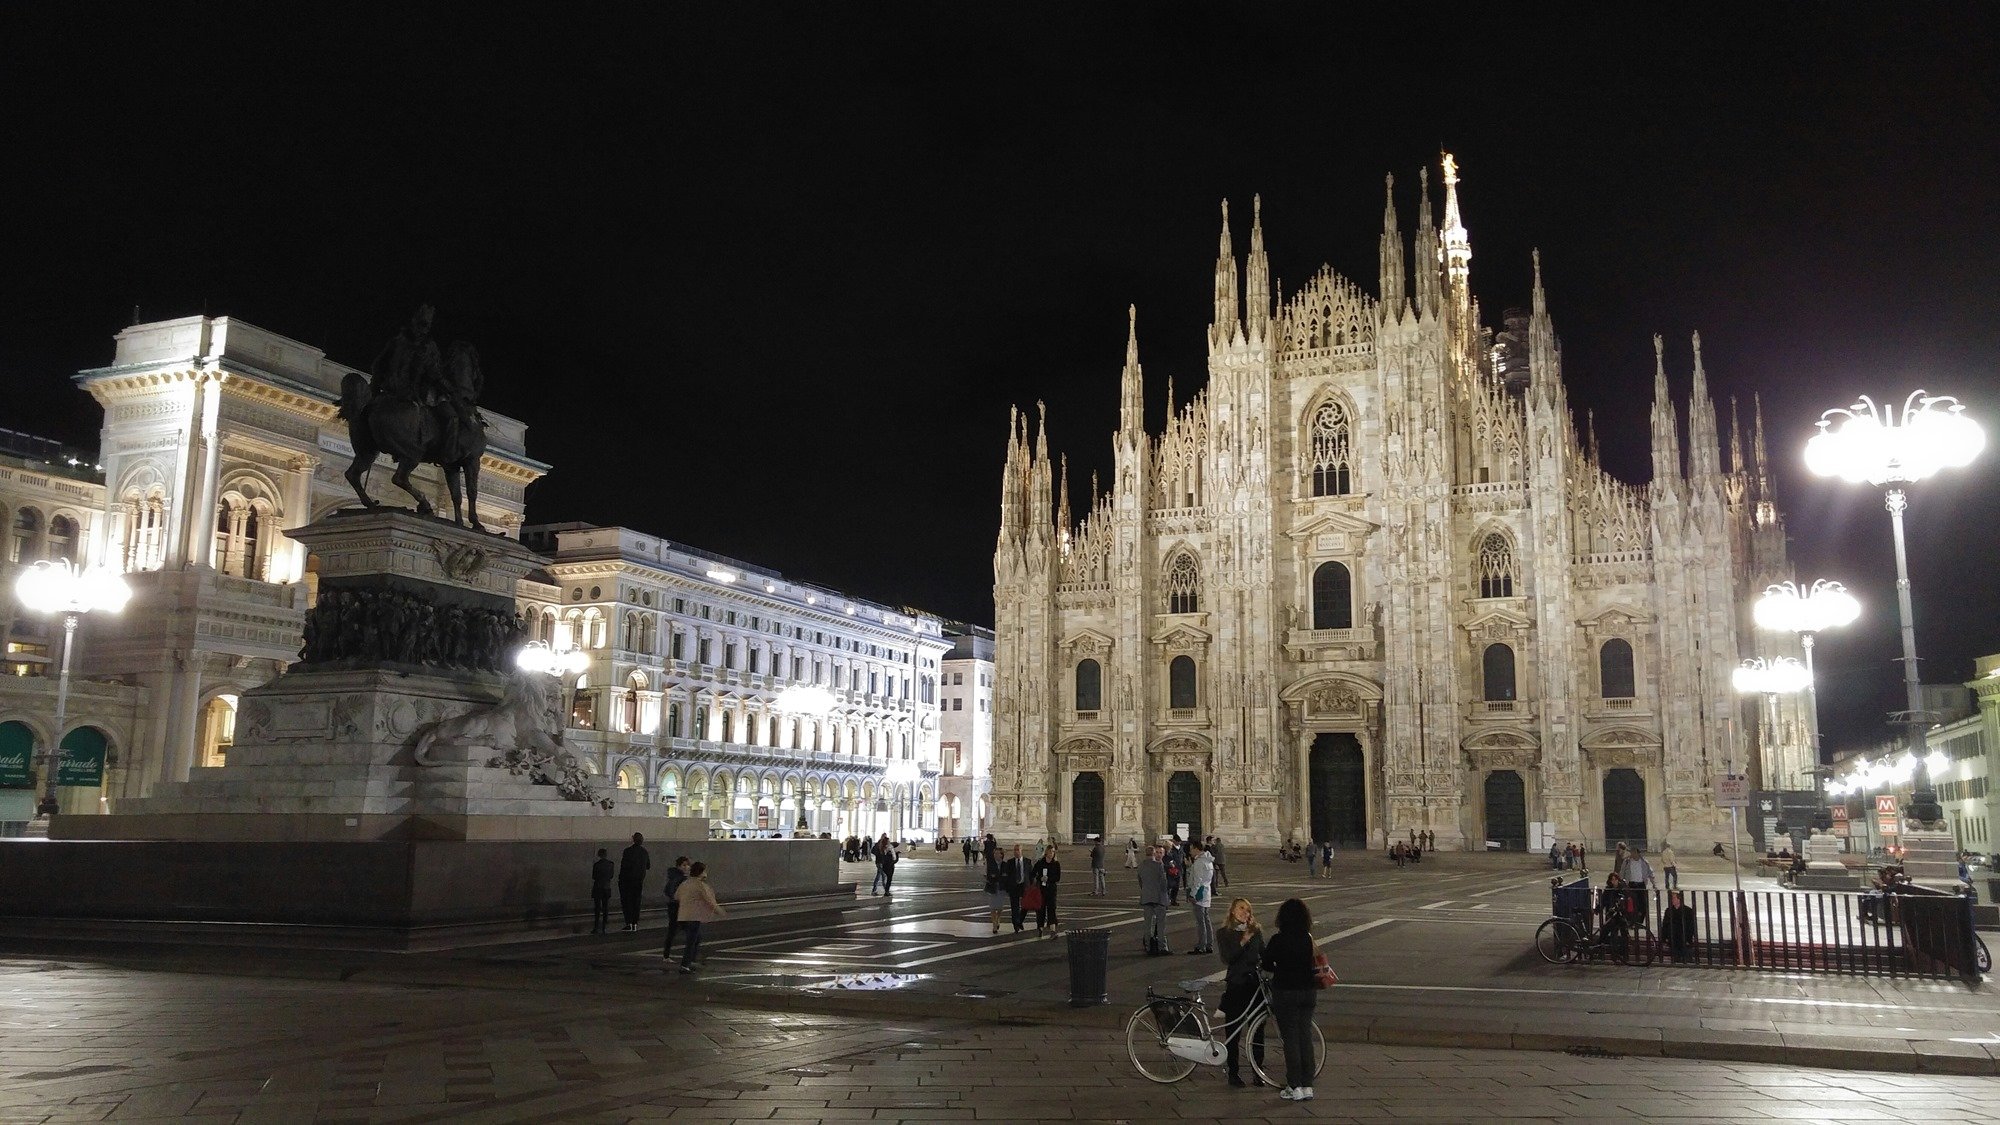 Милан город в италии достопримечательности фото с описанием